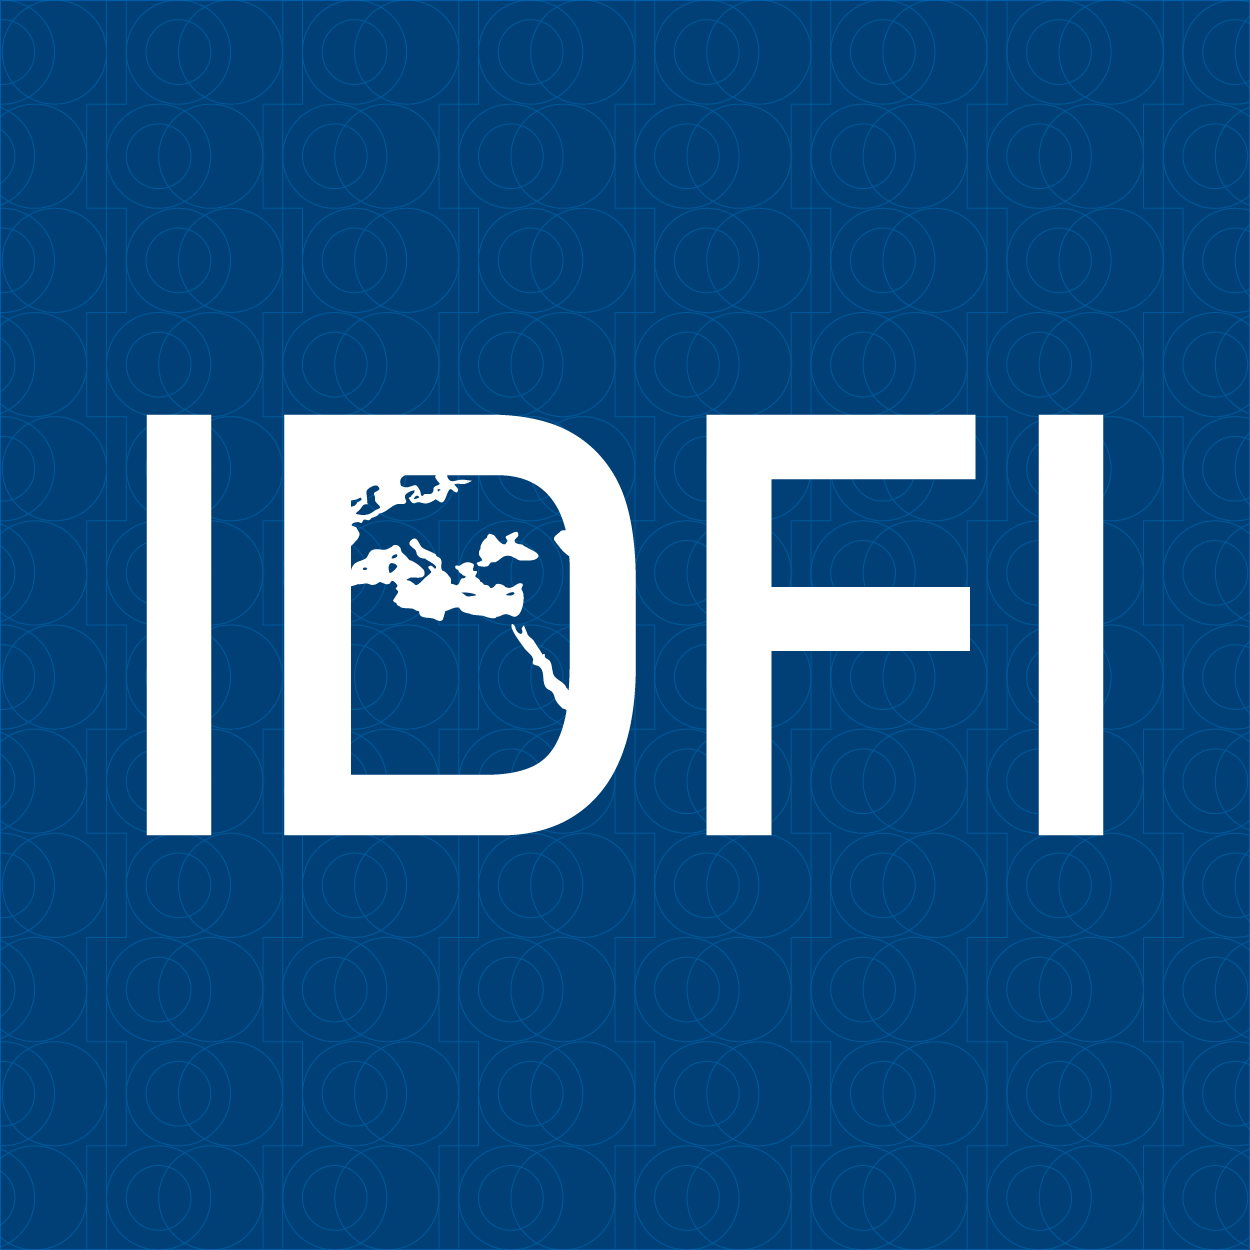 IDFI-მ კომენდანტის სათის გაუქმების მოთხოვნით სასამართლოს მიმართა